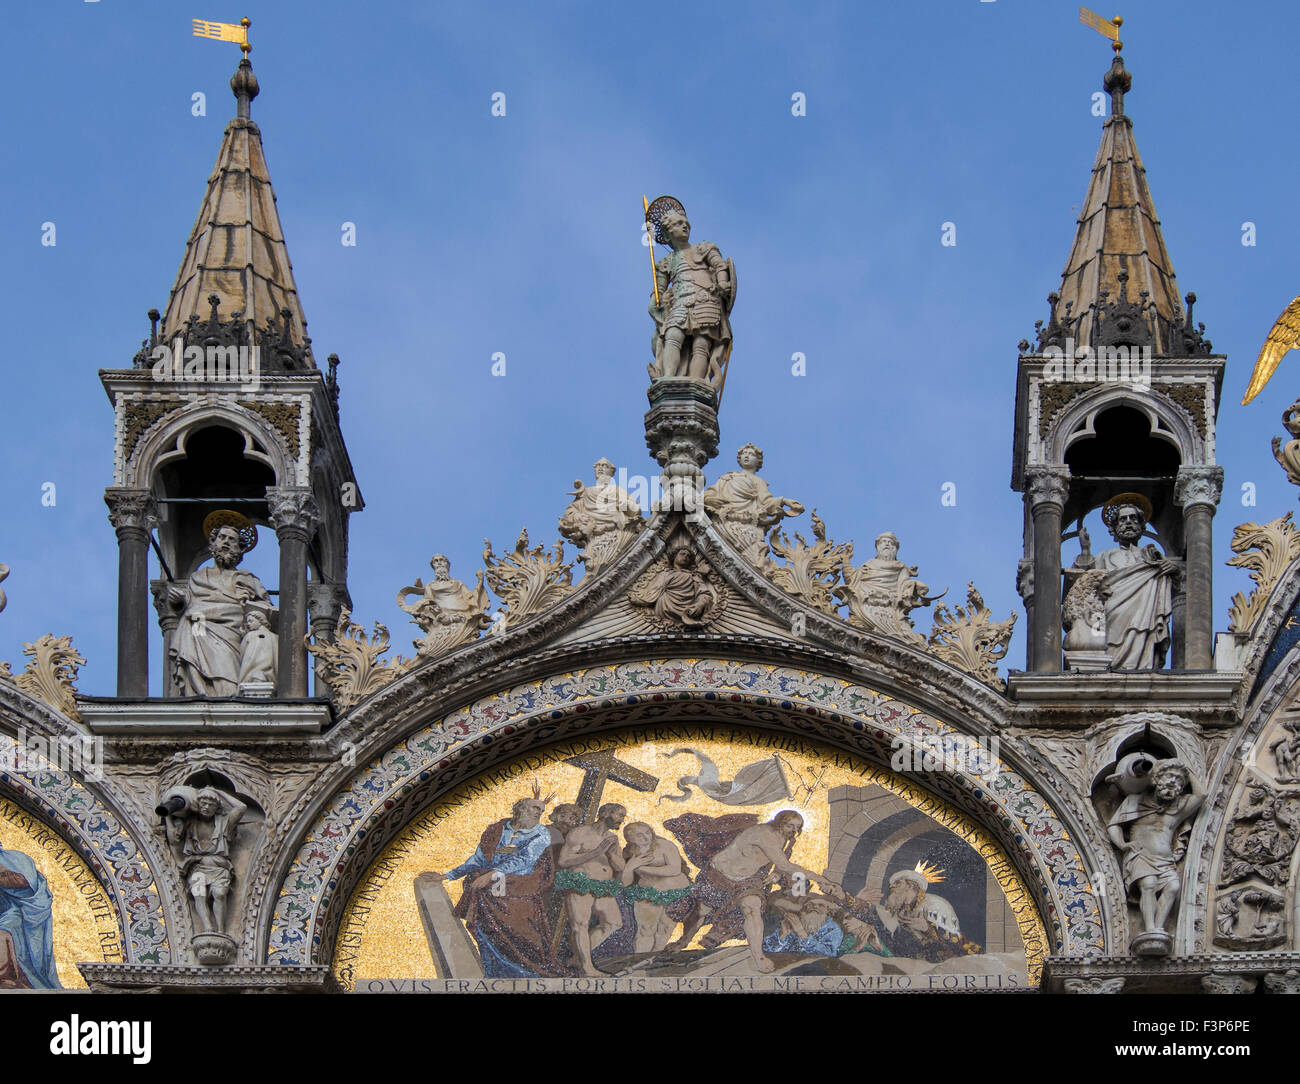 VENEZIA, ITALIA - 05 MAGGIO 2015: Decorazione ornata della Basilica di San Marco (Basilica Cattedrale Patriarcale di San Marco) Foto Stock